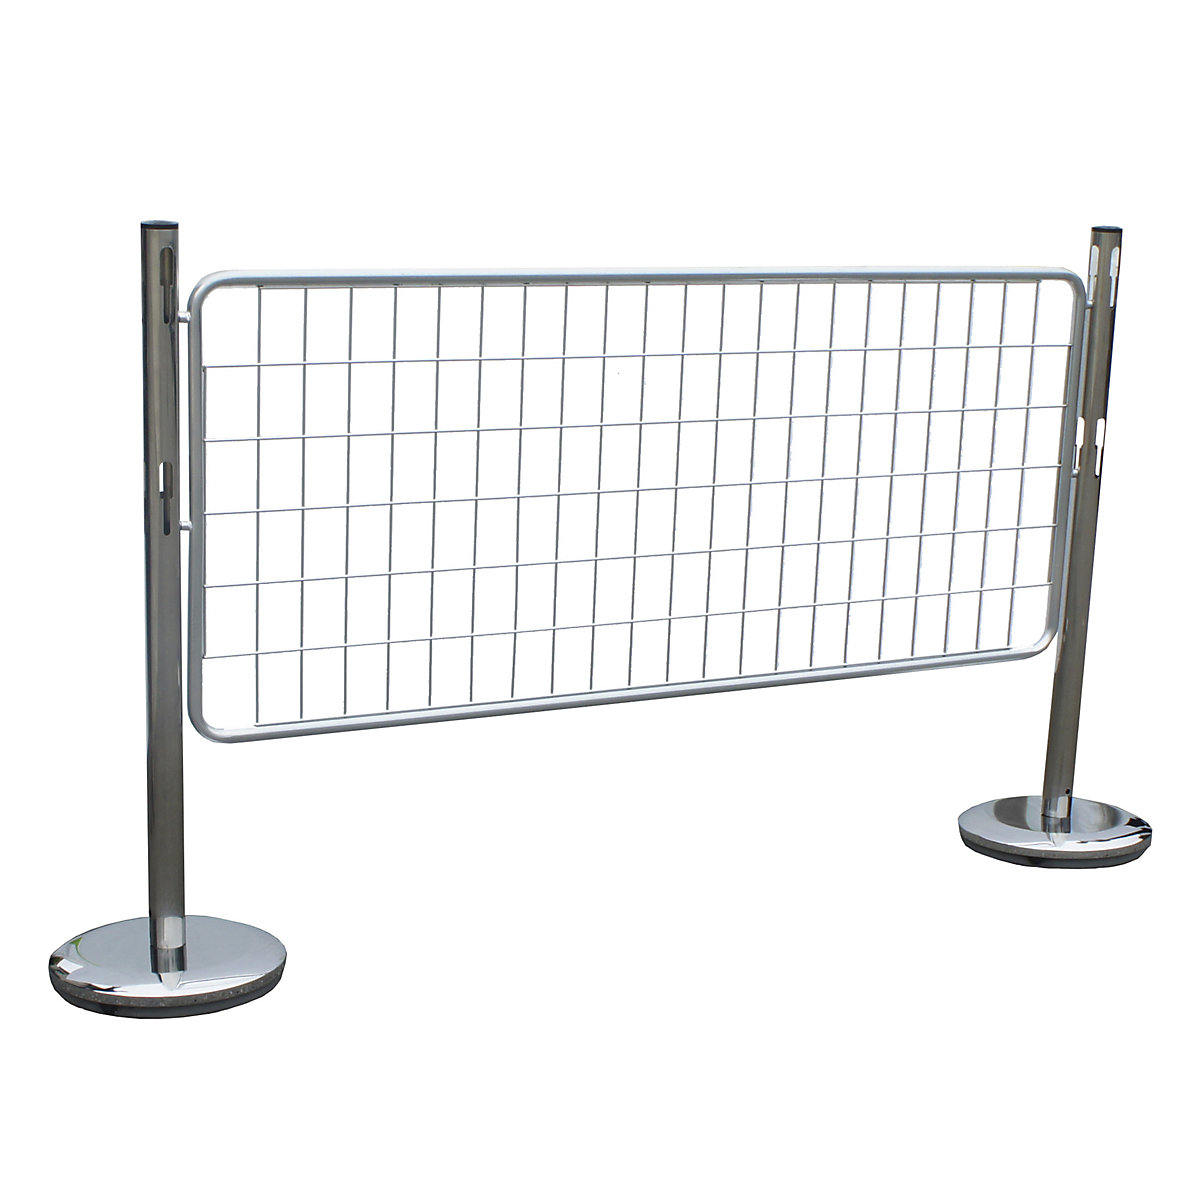 Conjunto de postes de barreira com grade – VISO, 2 postes, 1 grade, galvanizado / cromado-2